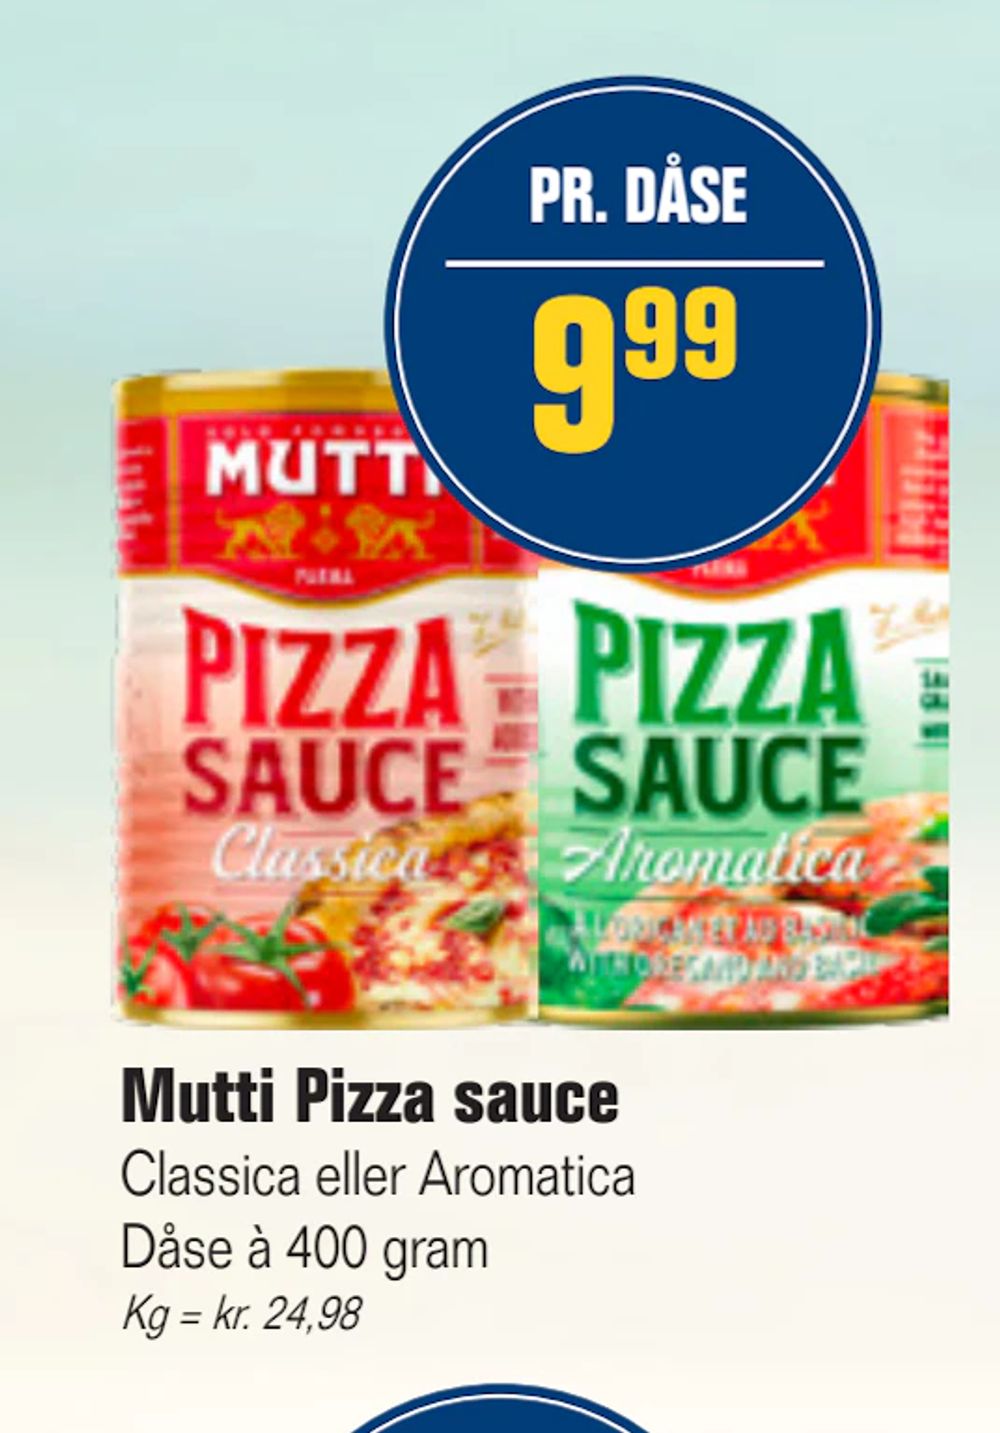 Tilbud på Mutti Pizza sauce fra Otto Duborg til 9,99 kr.